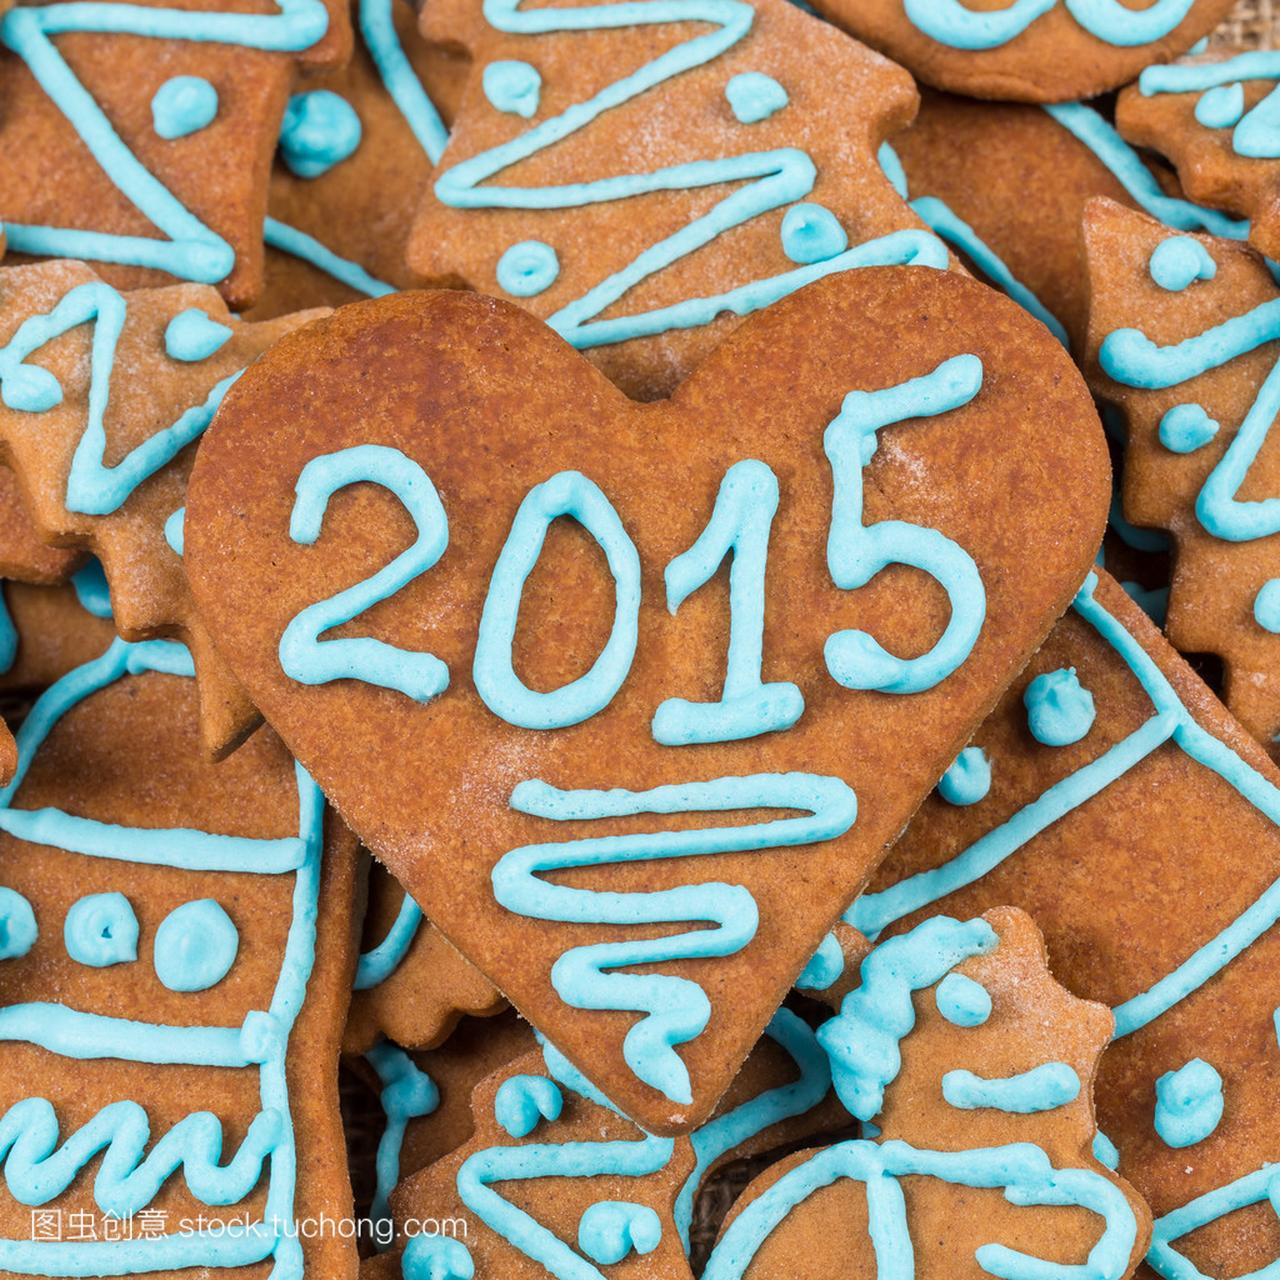 cookie 的 2015年号